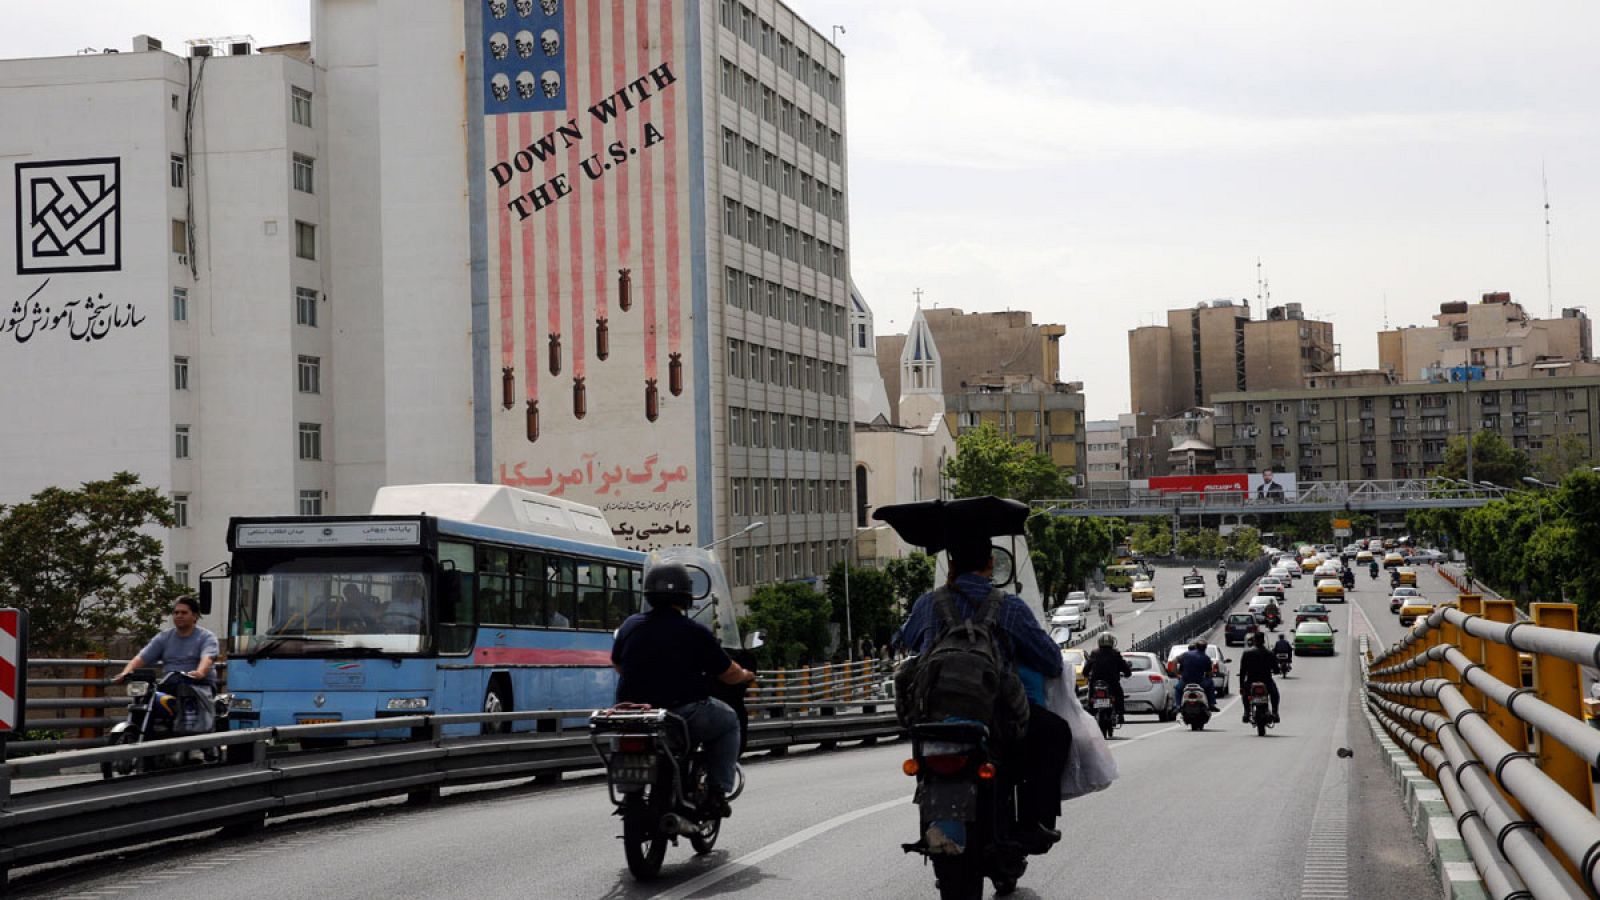 Conductores iraníes circulan junto a un edificio en el que aparece una pintada contra los Estados Unidos.